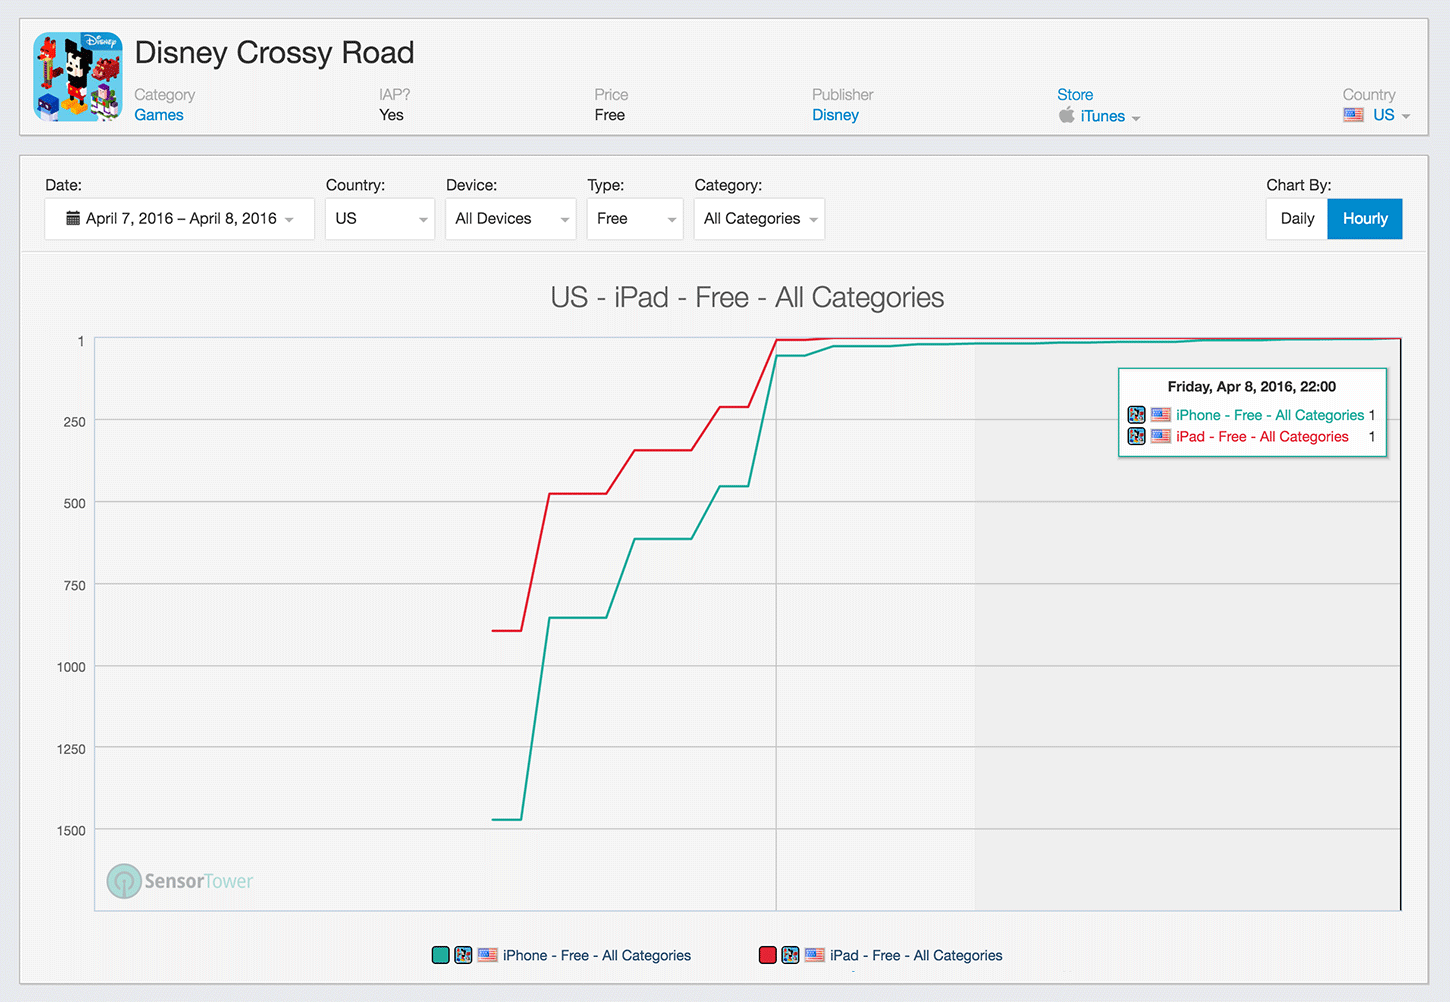 Disney Crossy Road Category Rankings History